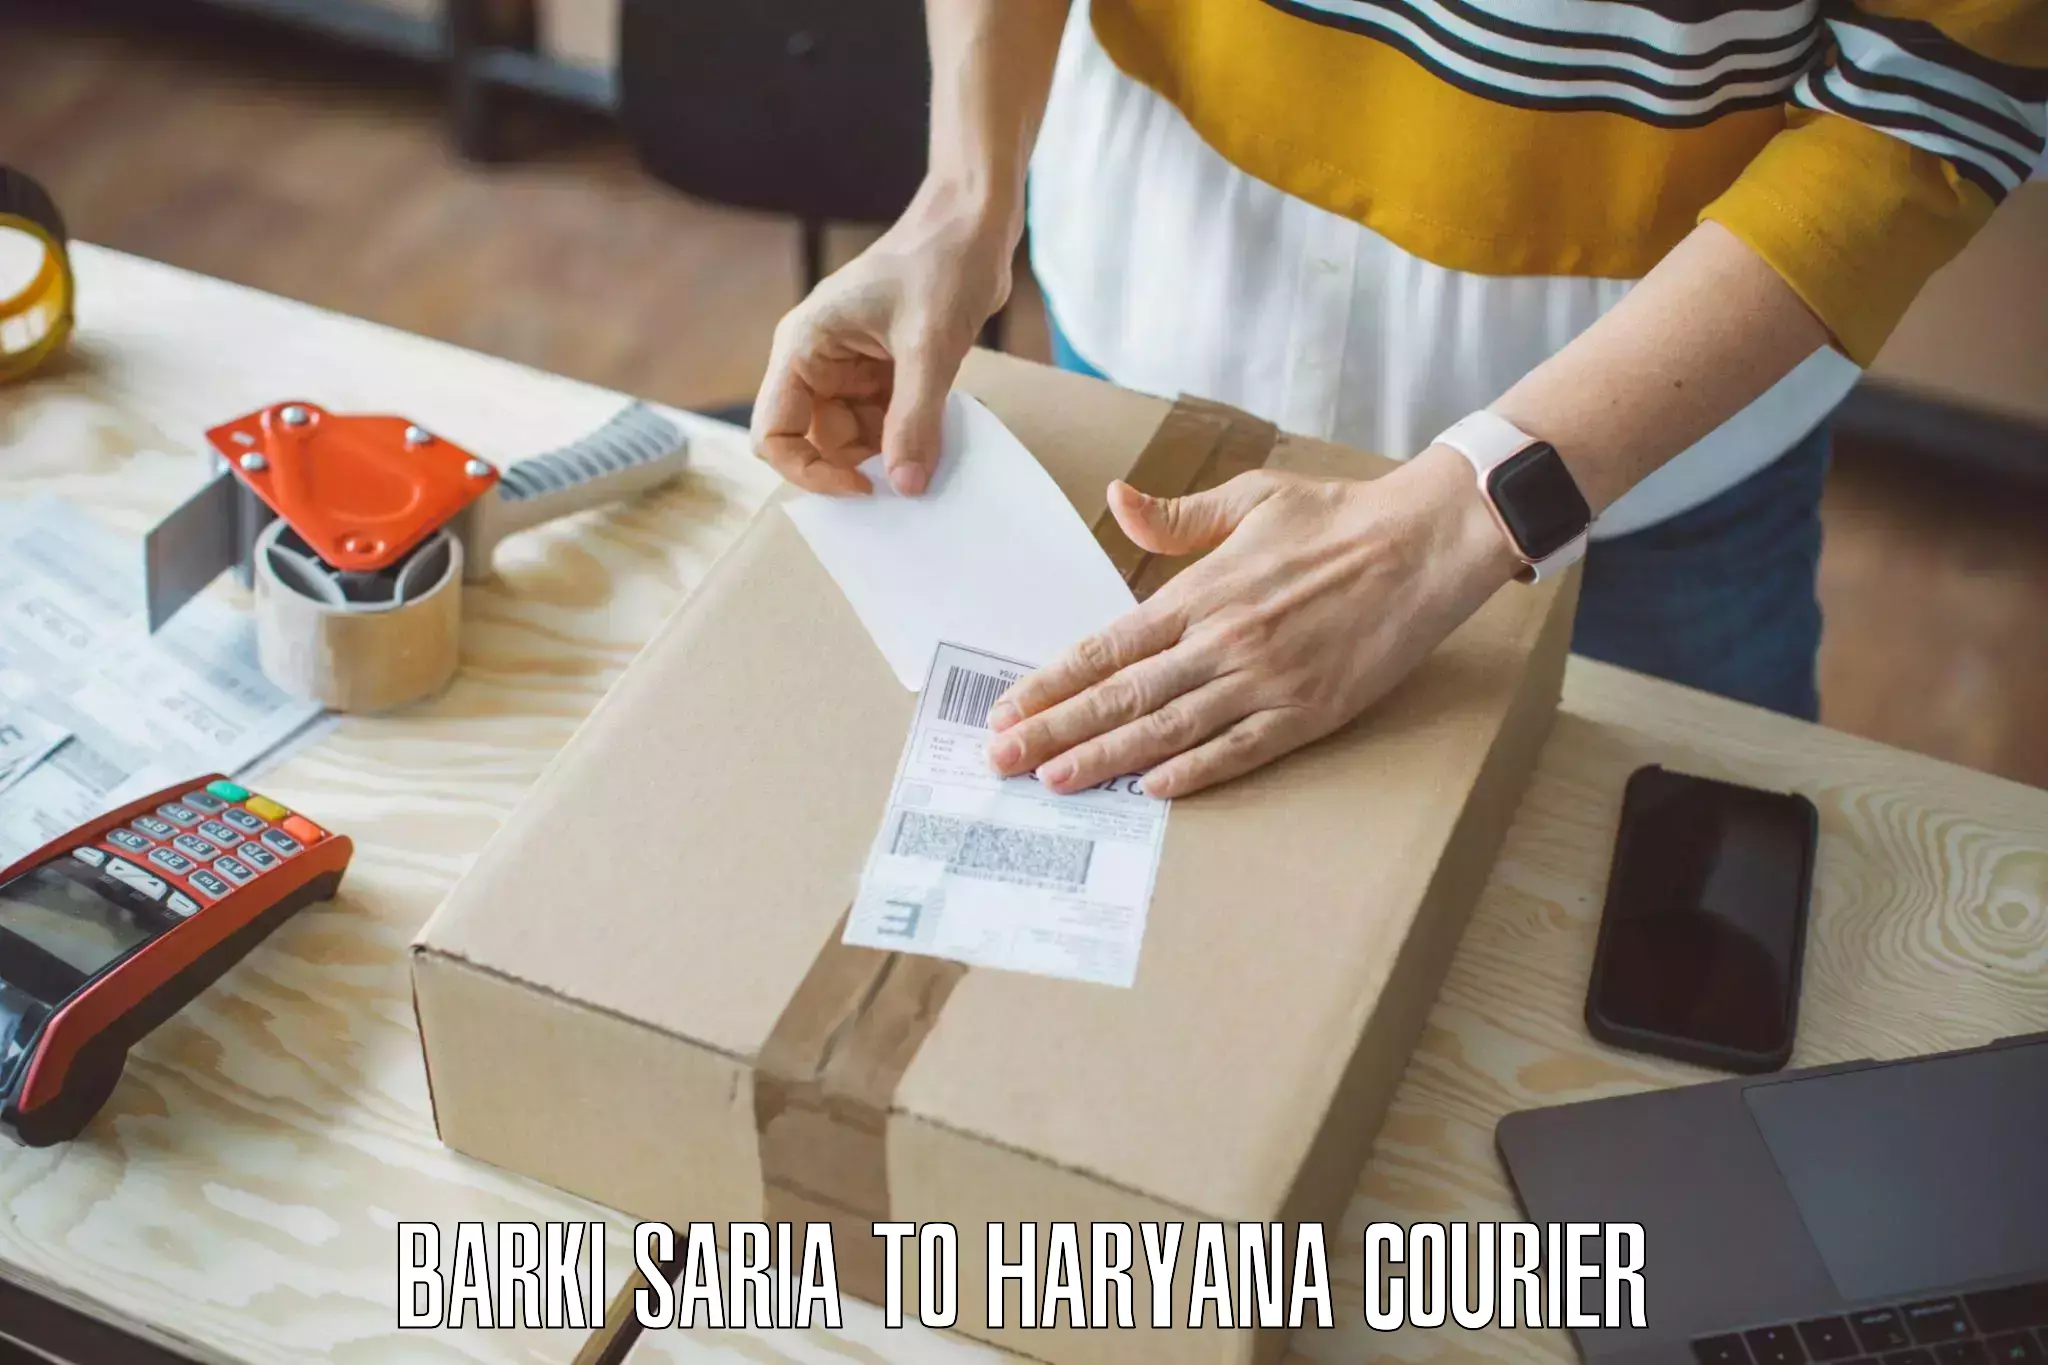 Doorstep moving services Barki Saria to Haryana